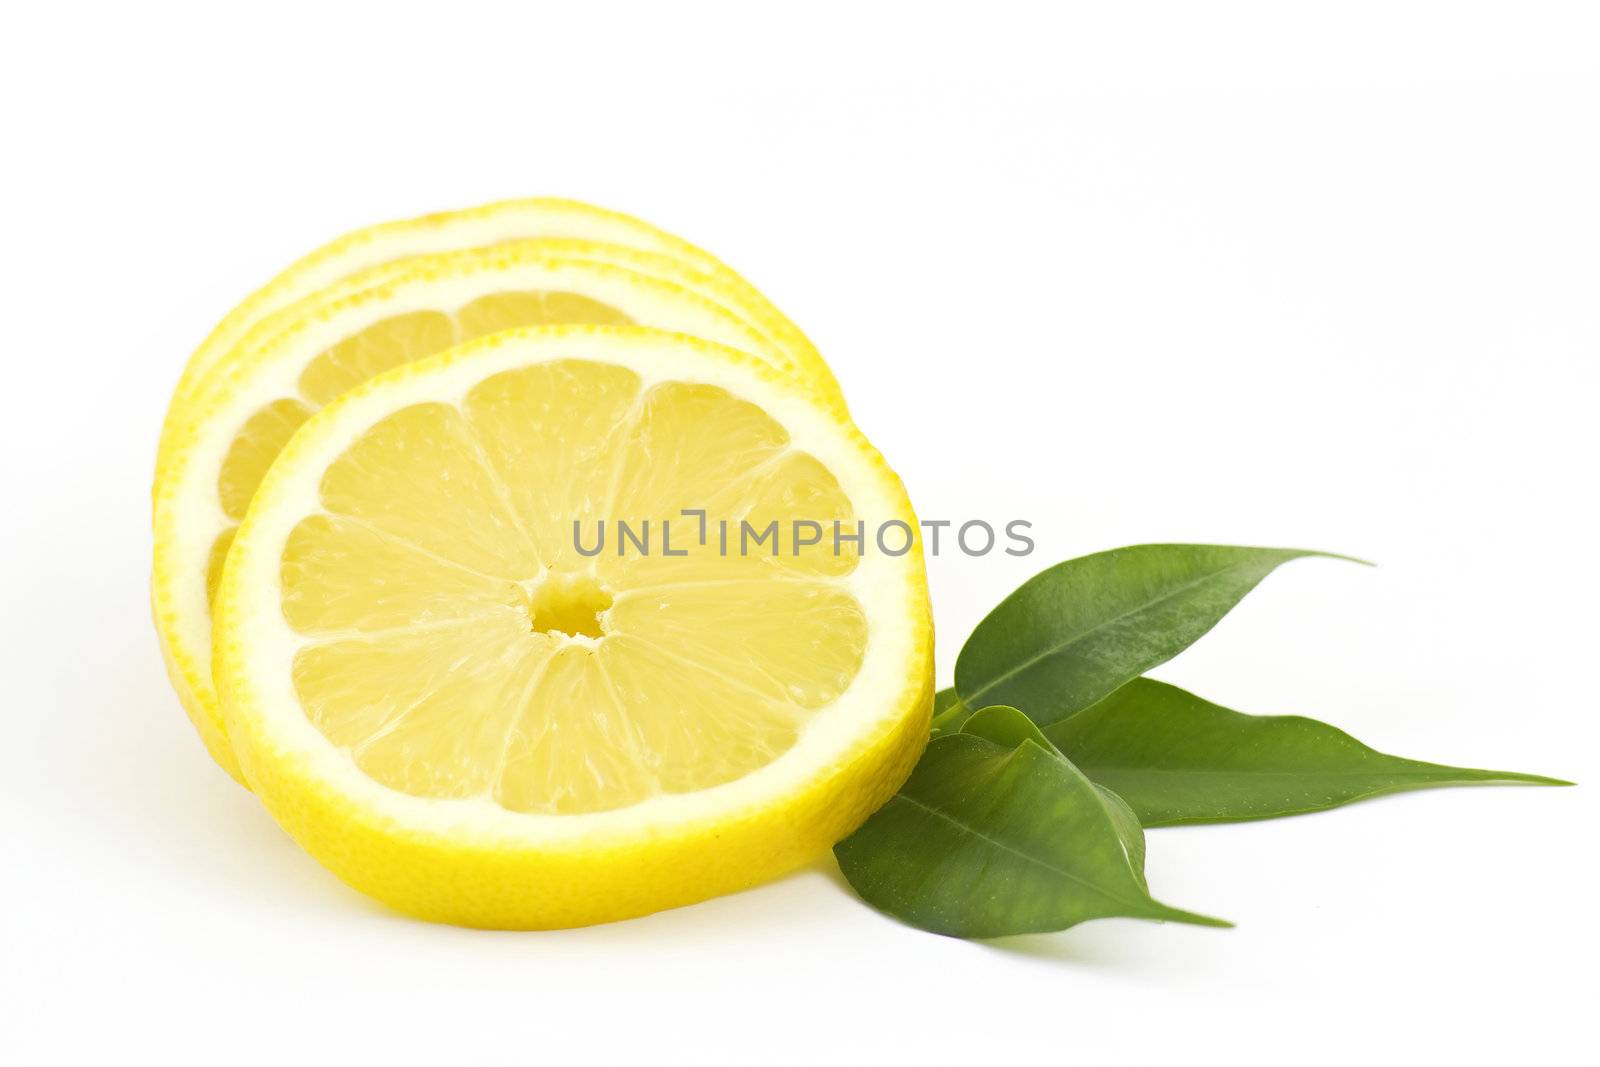 slices of lemon by miradrozdowski